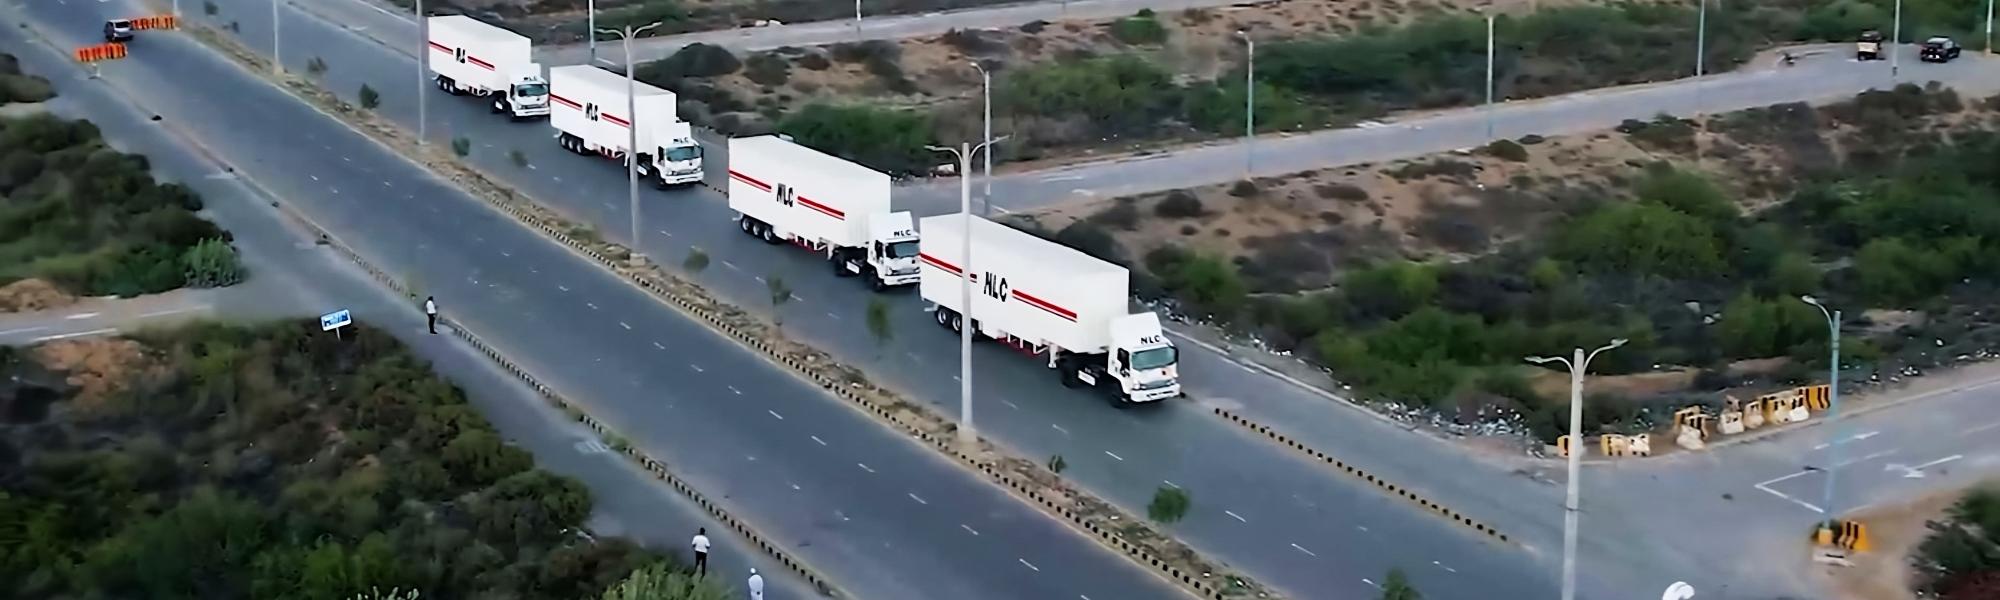 Пакистанская компания сокращает сроки перевозок с системой МДП